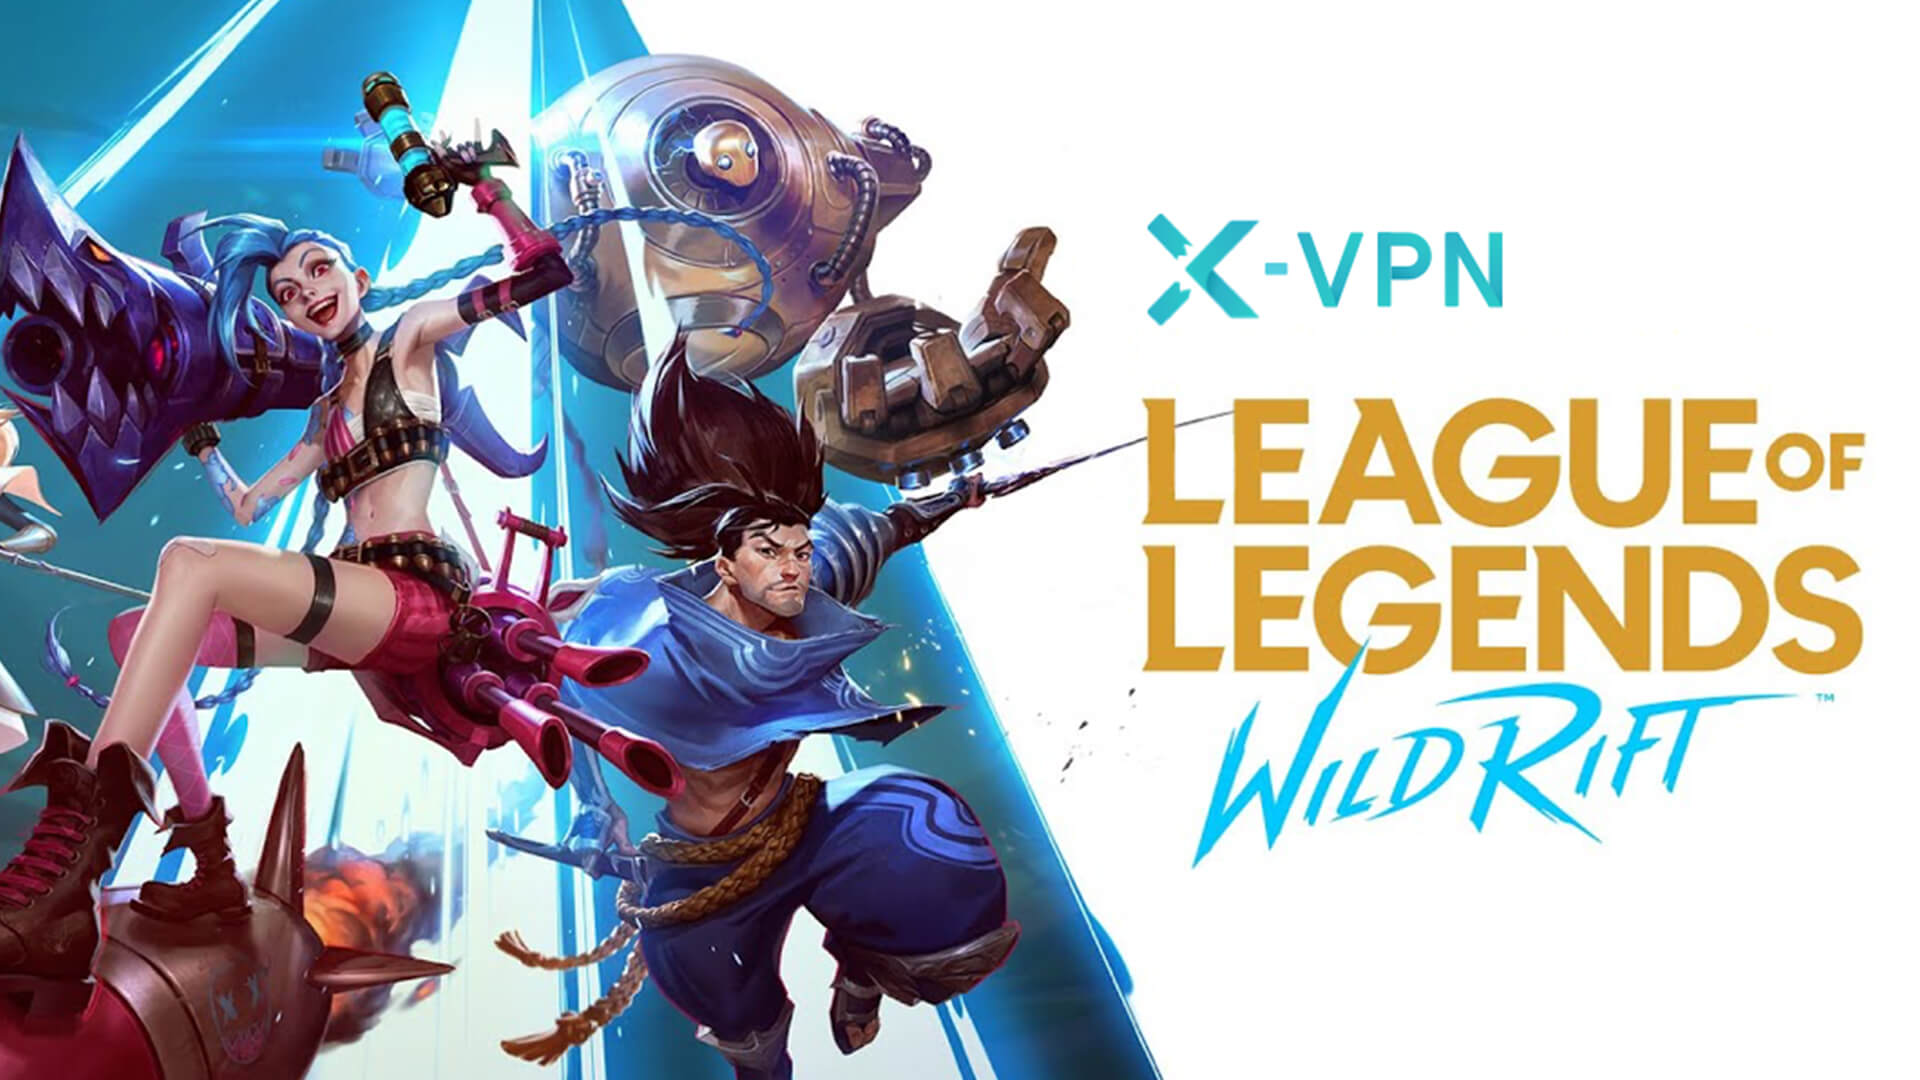 Spielen Sie League of Legends: Wild Rift weltweit mit offenen Daten.